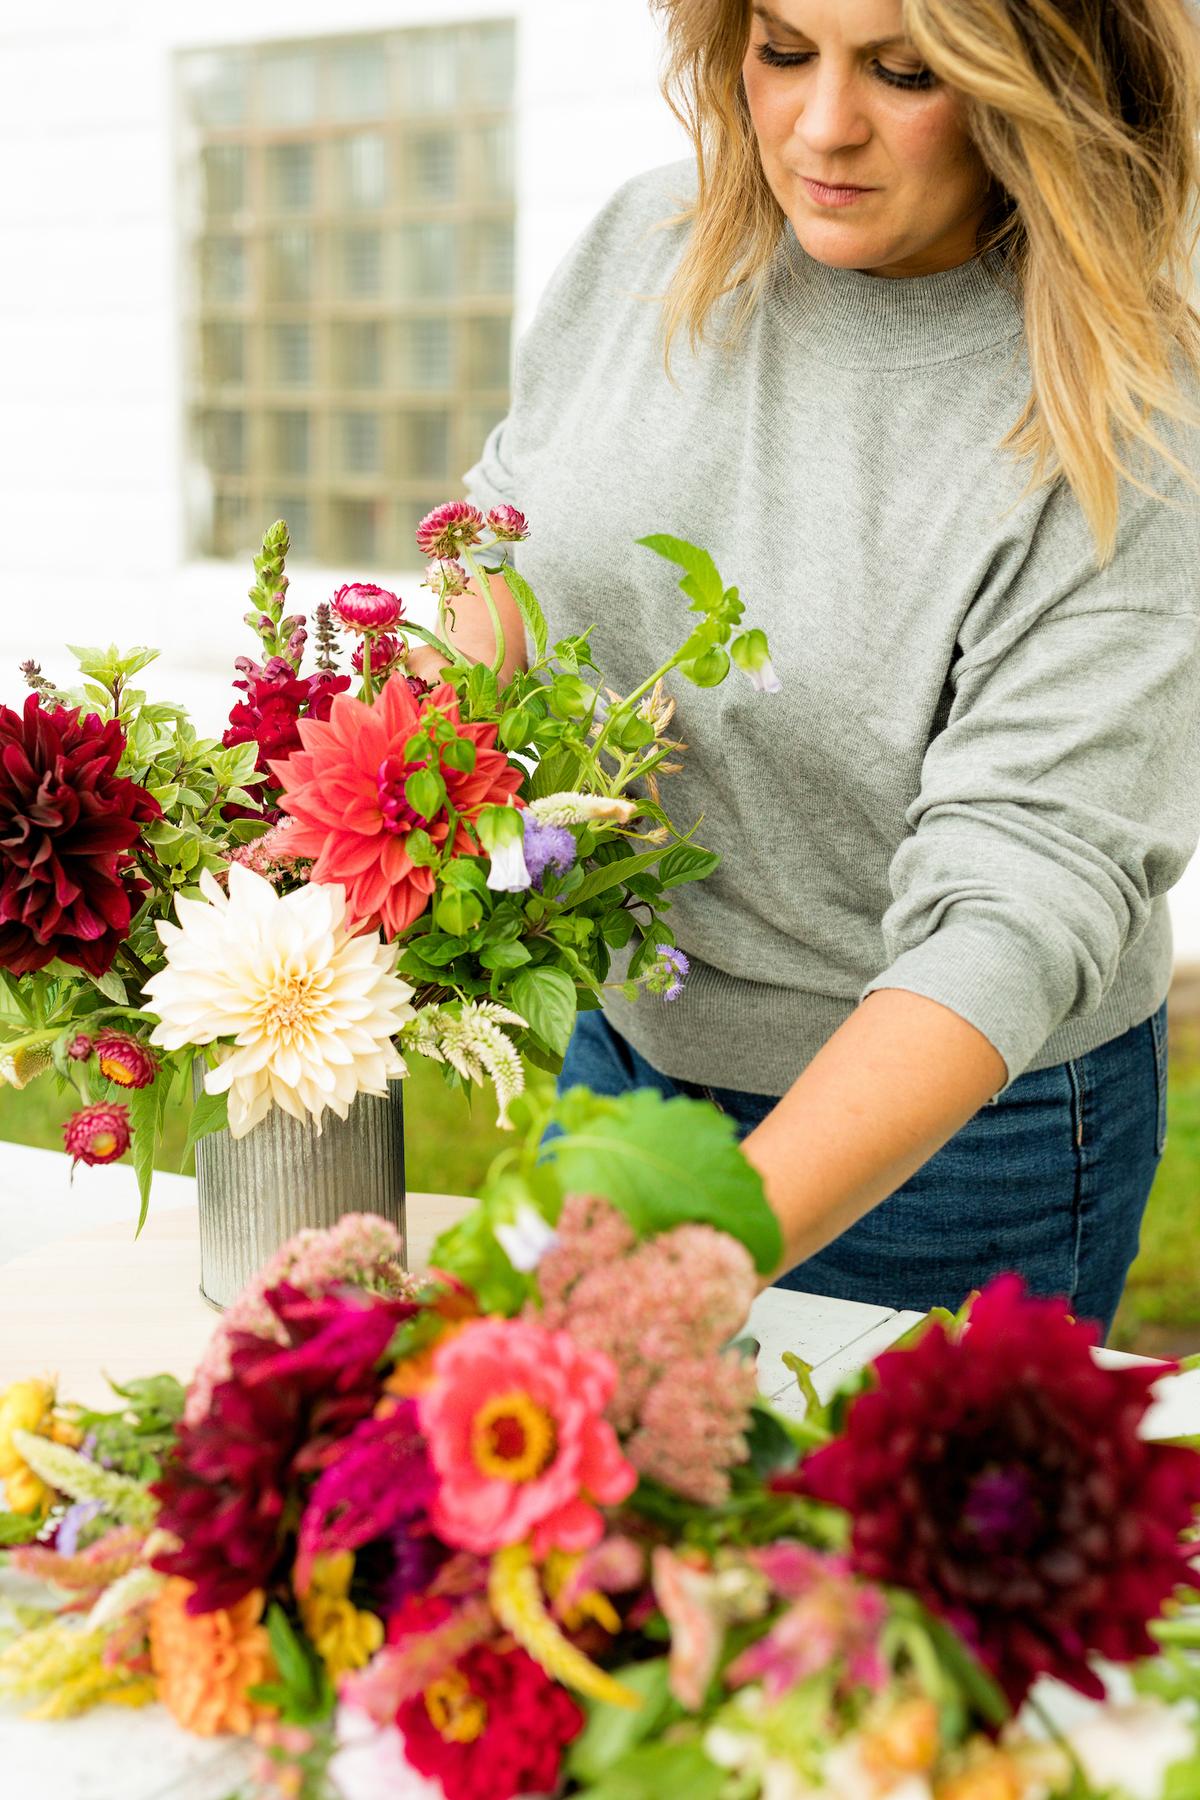 Britney Zondlak arranging flowers grown by Two Sisters Flower Farm. (Courtesy of Britney Zondlak)